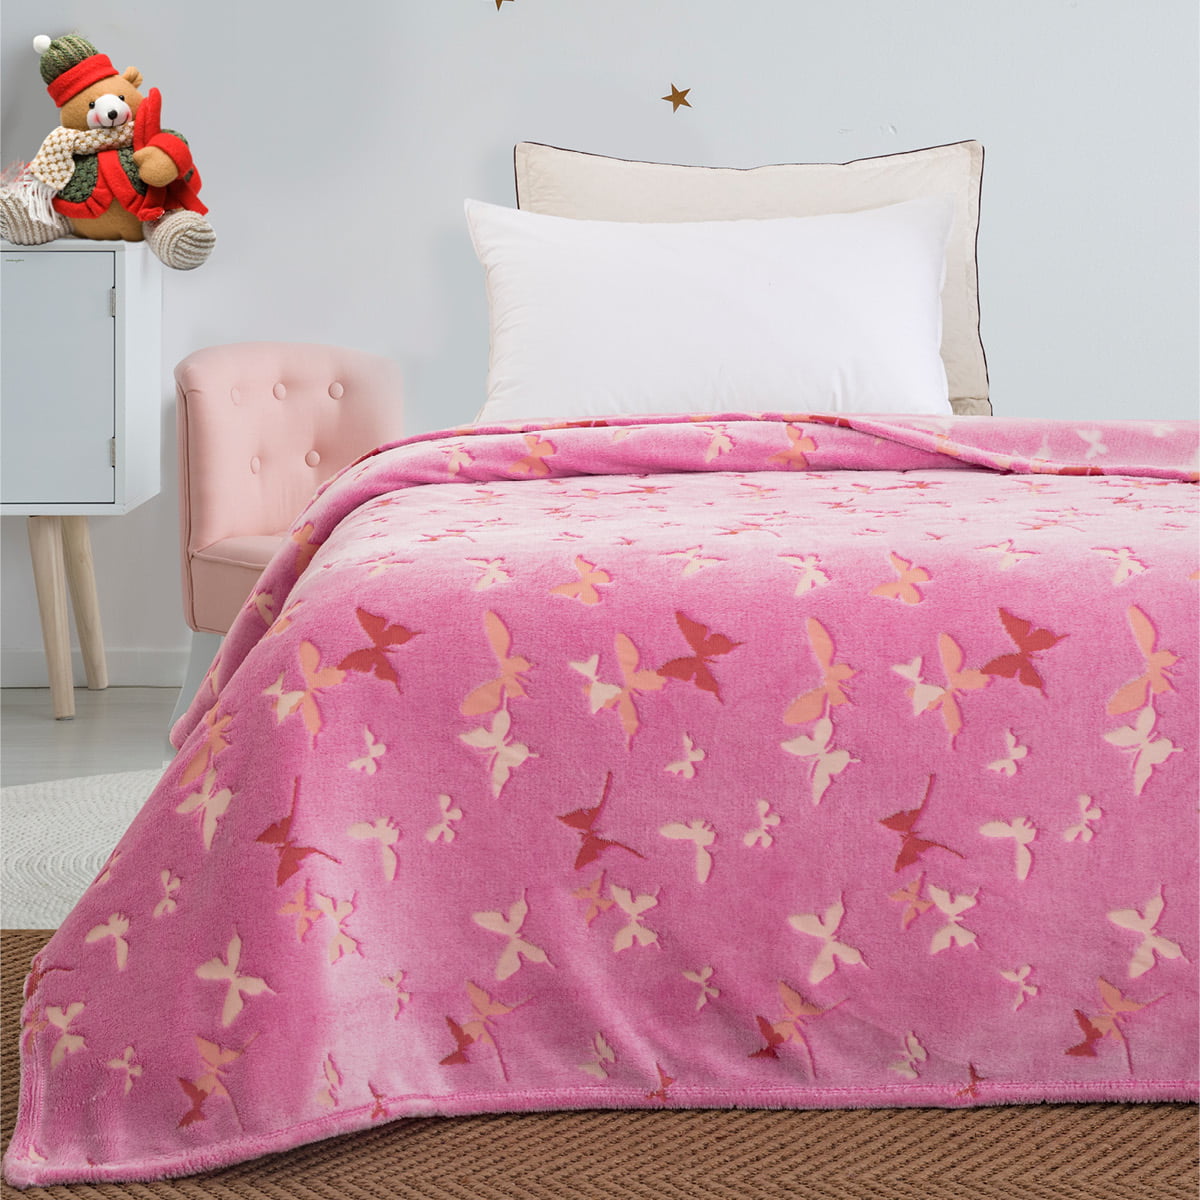 Κουβέρτα μονή φωσφορίζουσα Art 6138  160×220 Ροζ Beauty Home